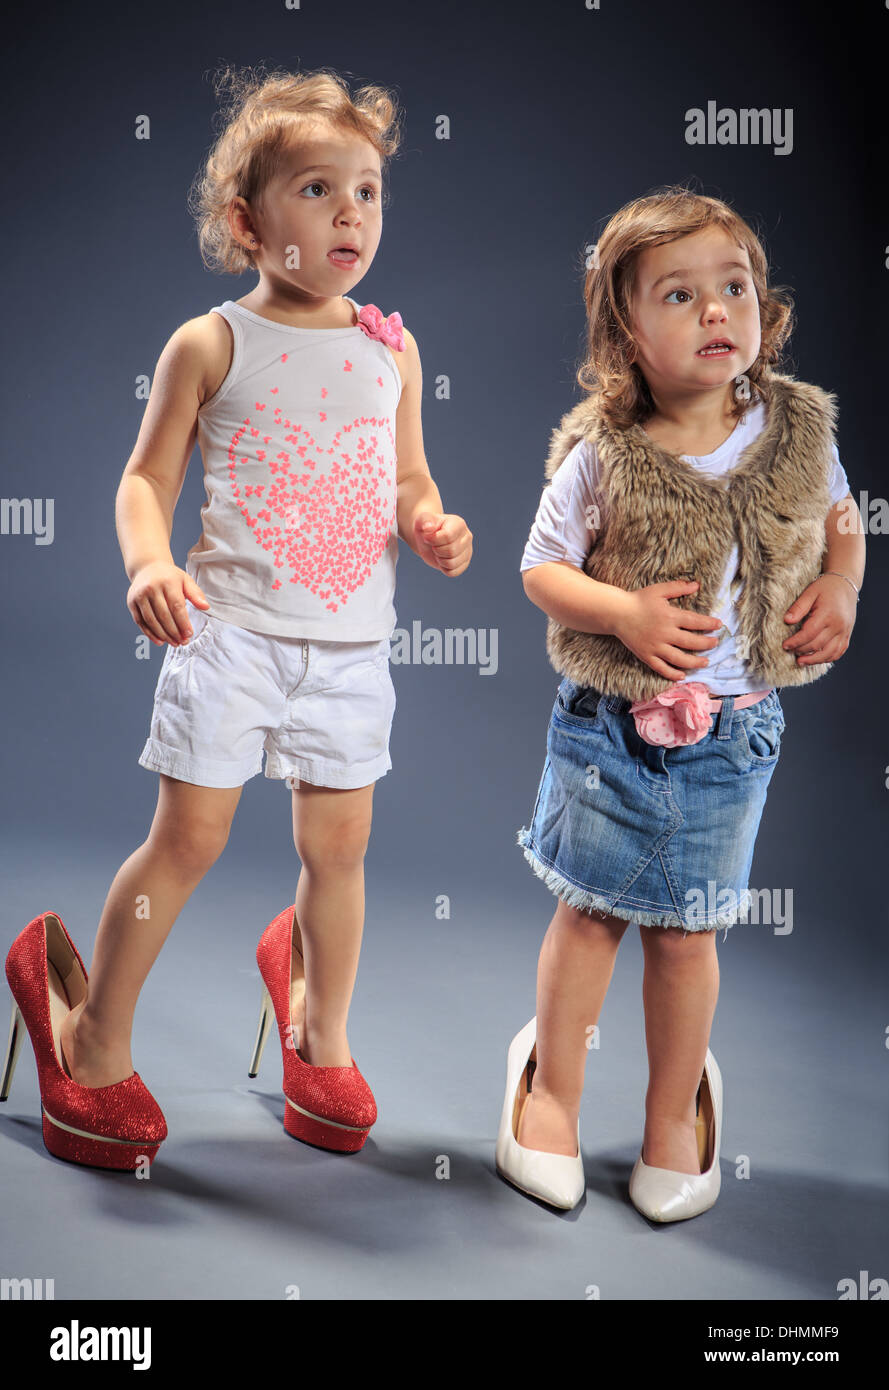 Studioaufnahme von zwei kleinen Mädchen verkleidet Stockfoto